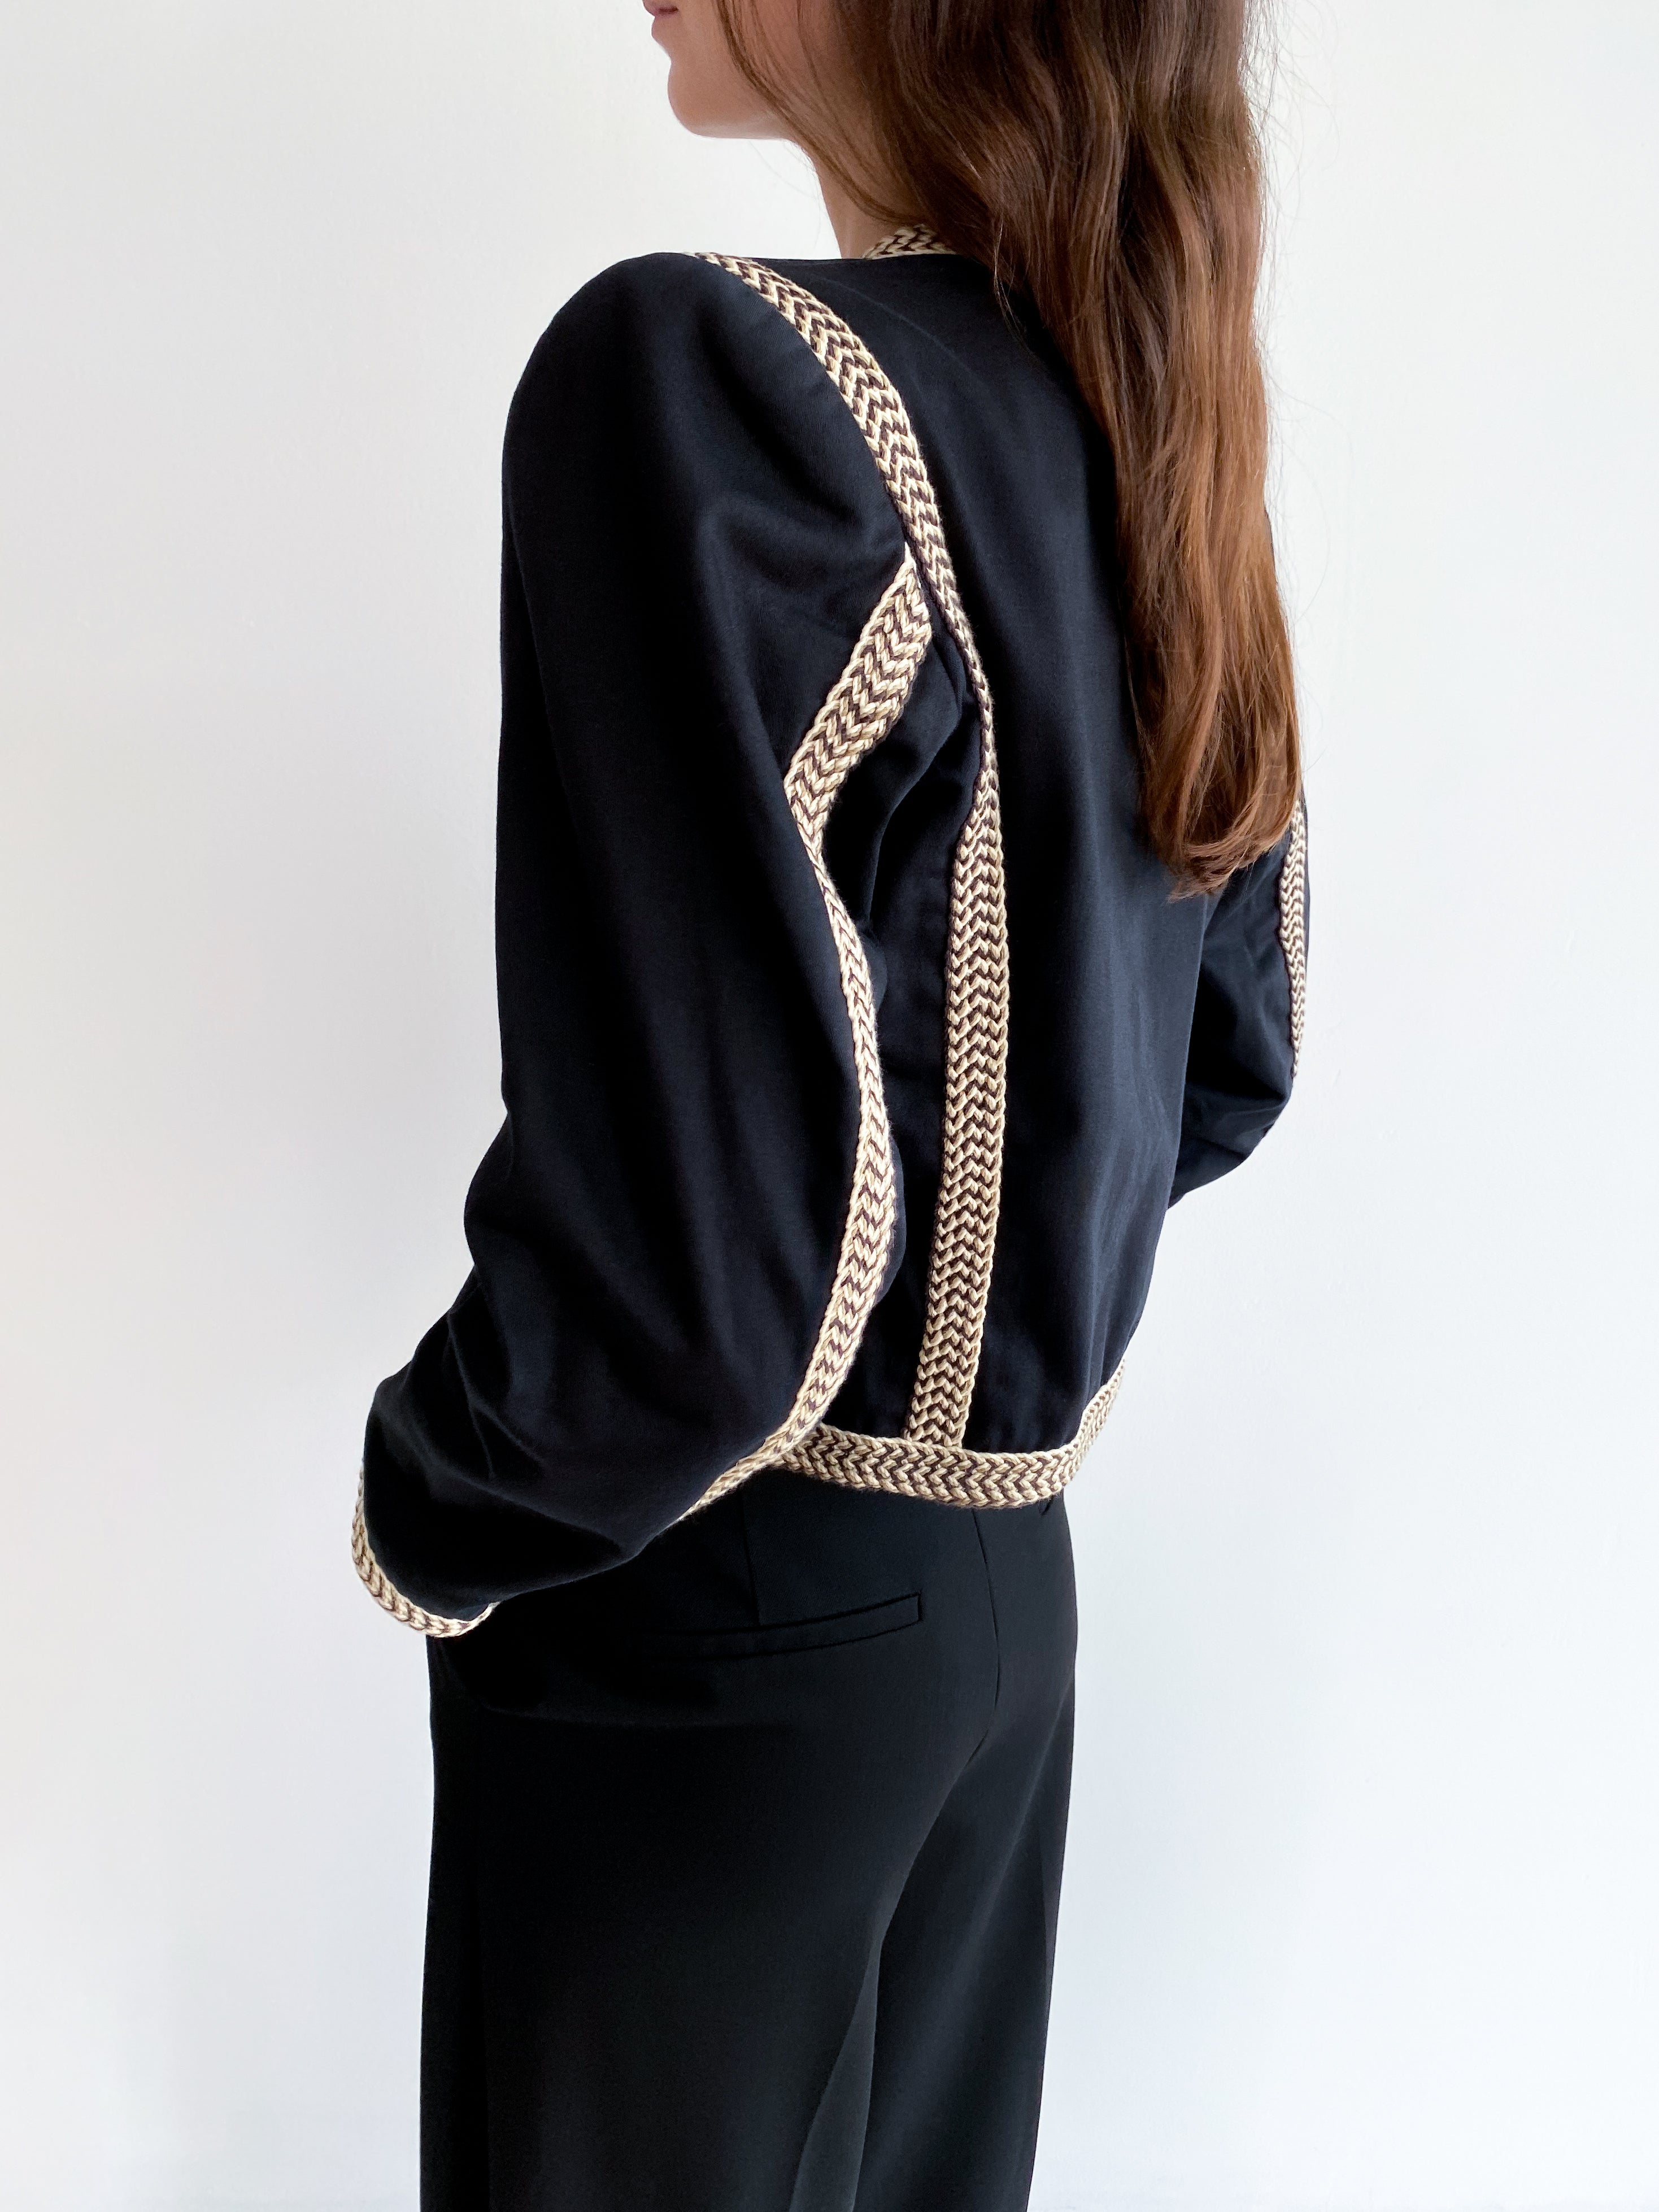 Yves Saint Laurent cotton jacket